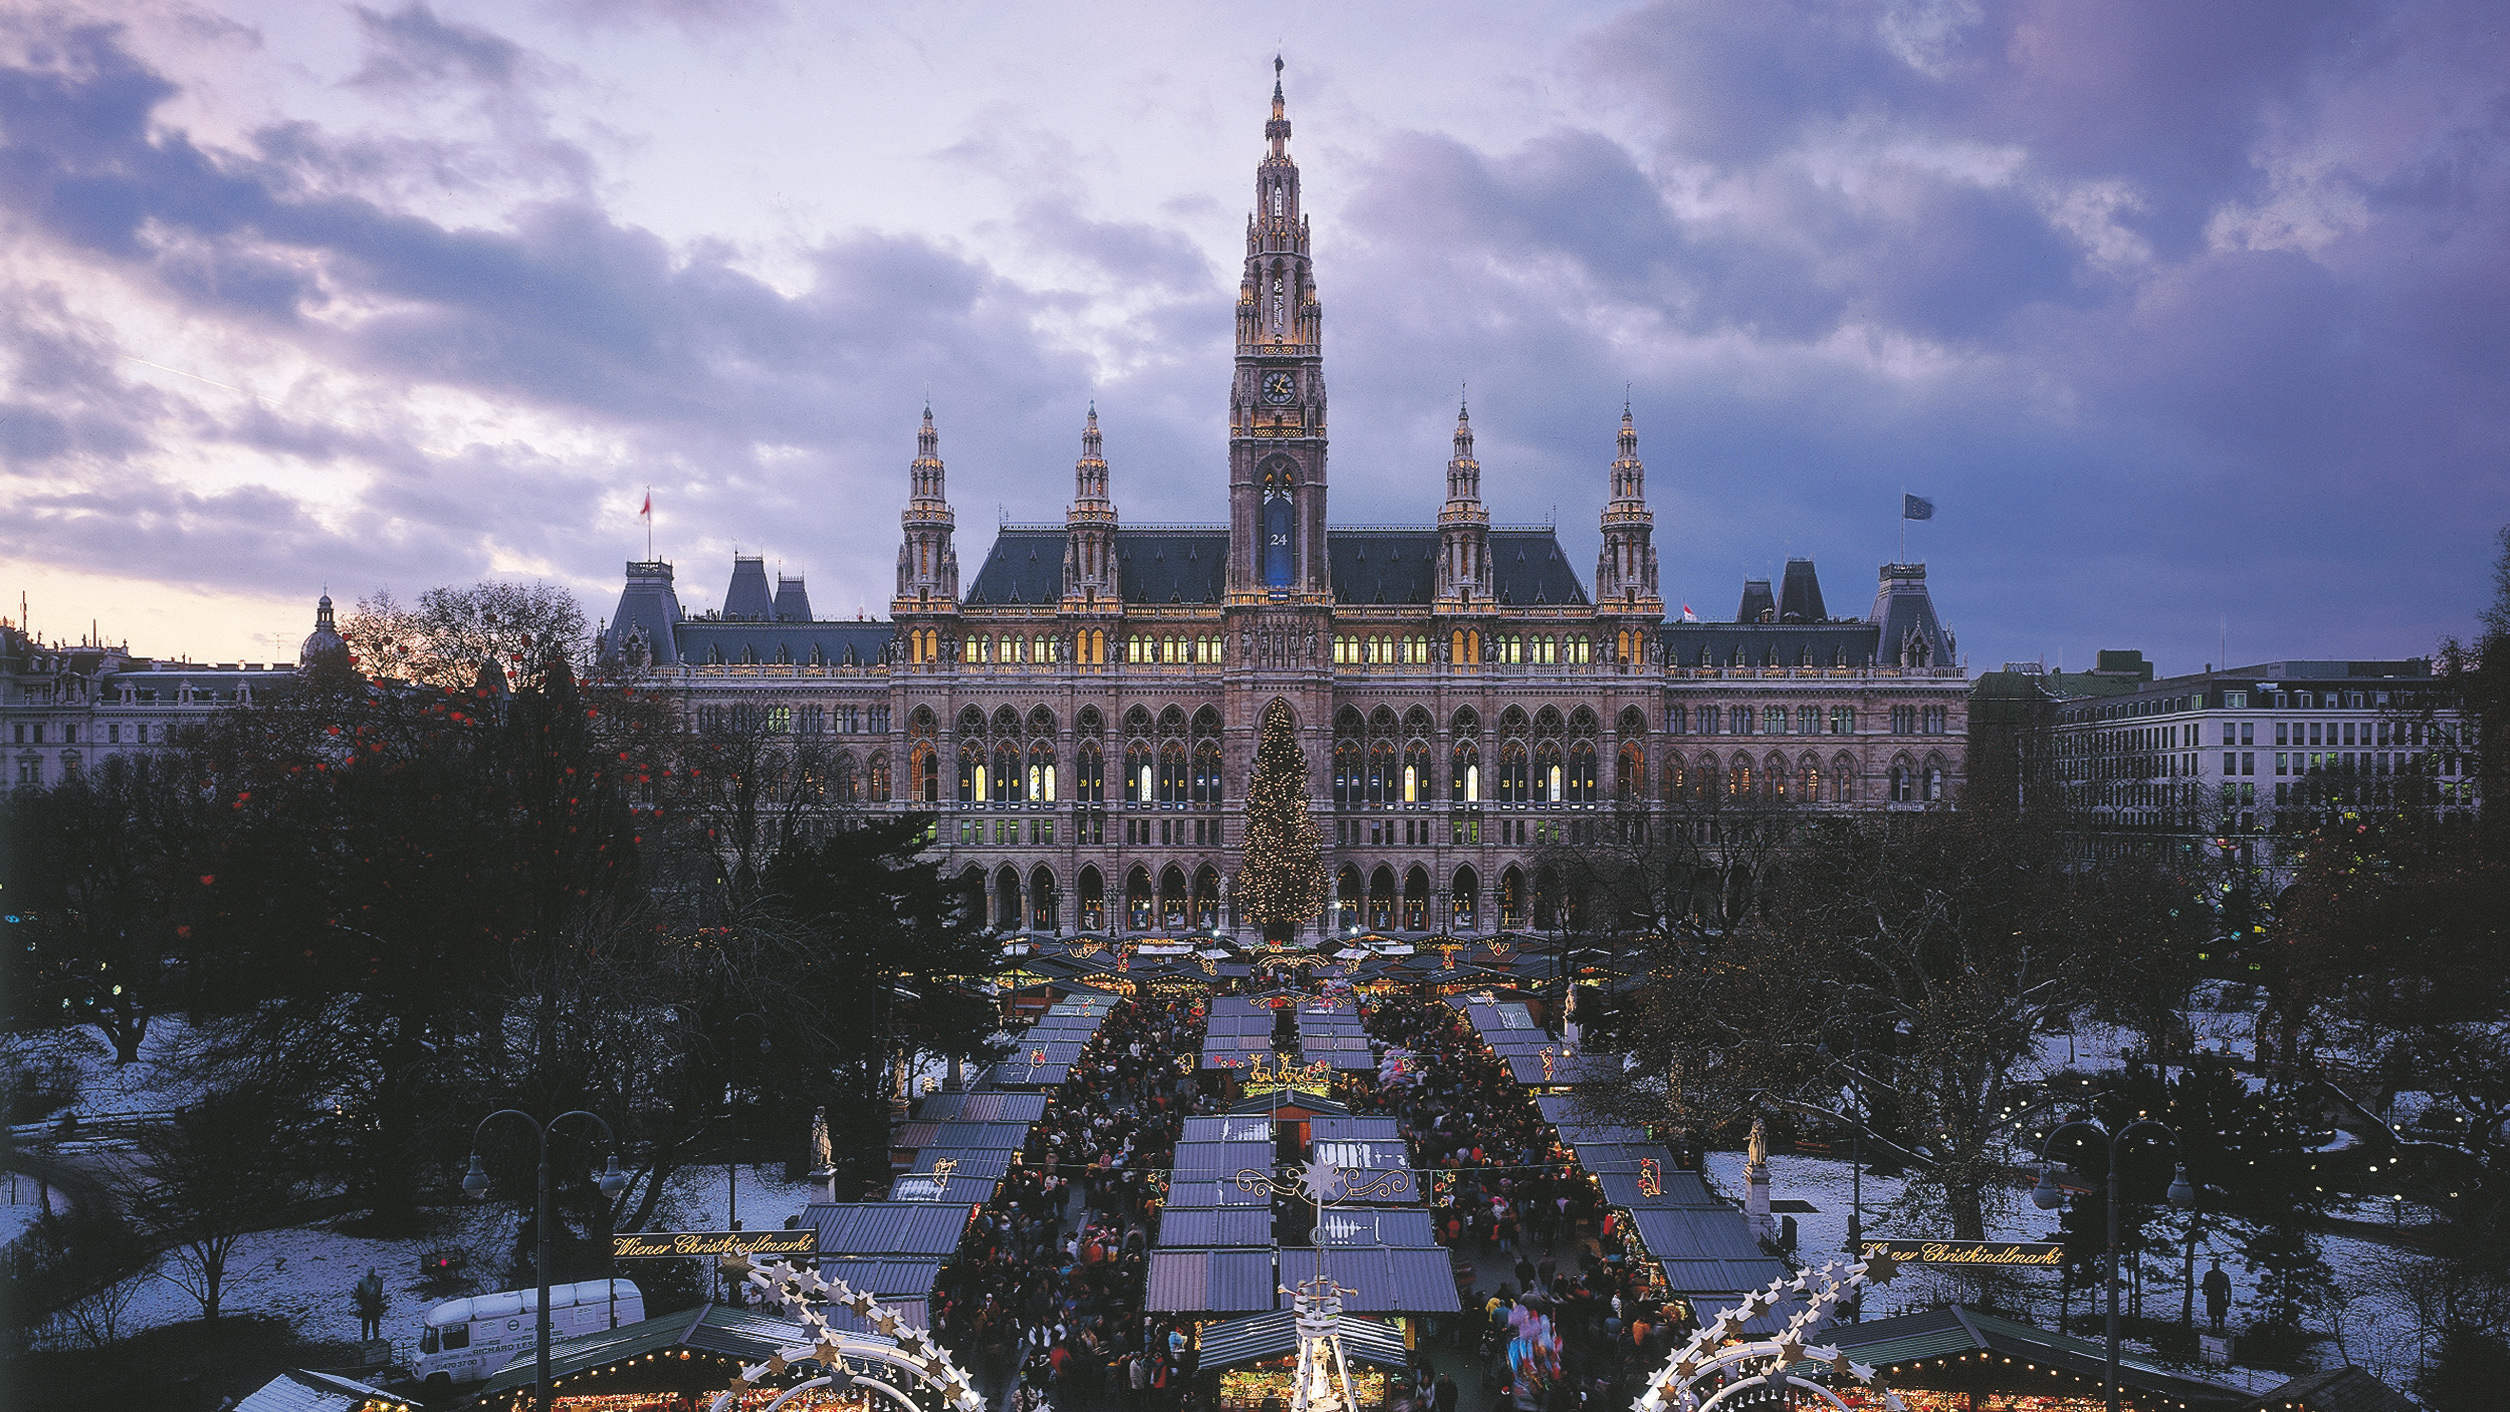 Bild von Weihnachtsmarkt vorm Wiener Rathaus bei Abenddämmerung.